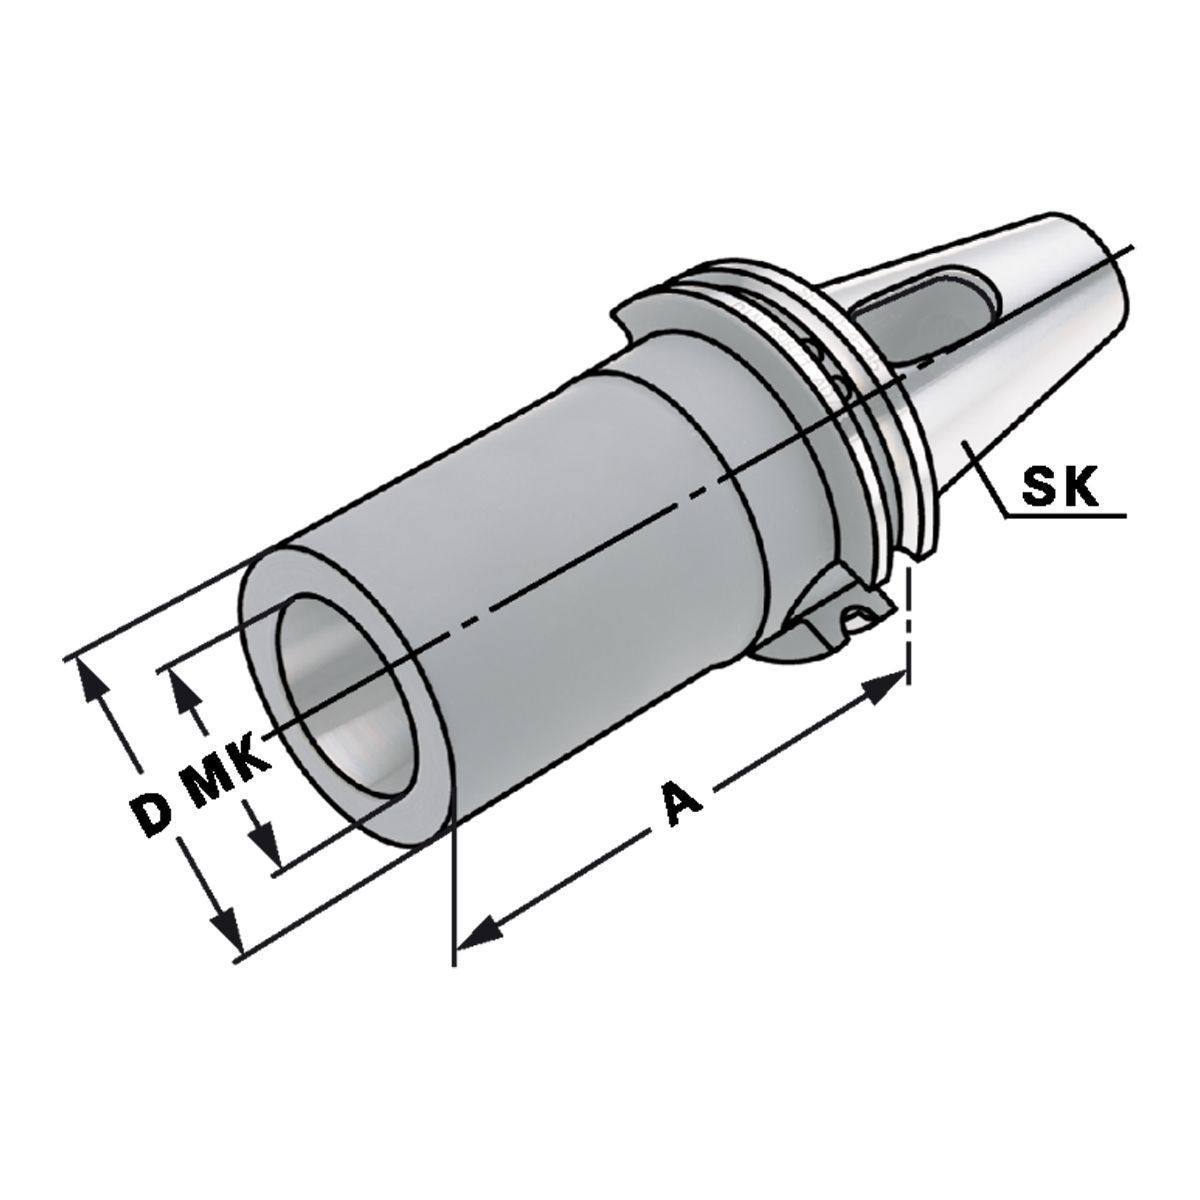 Zwischenhülse SK 50-2-60 für MK mit Austreiblappen DIN 6383